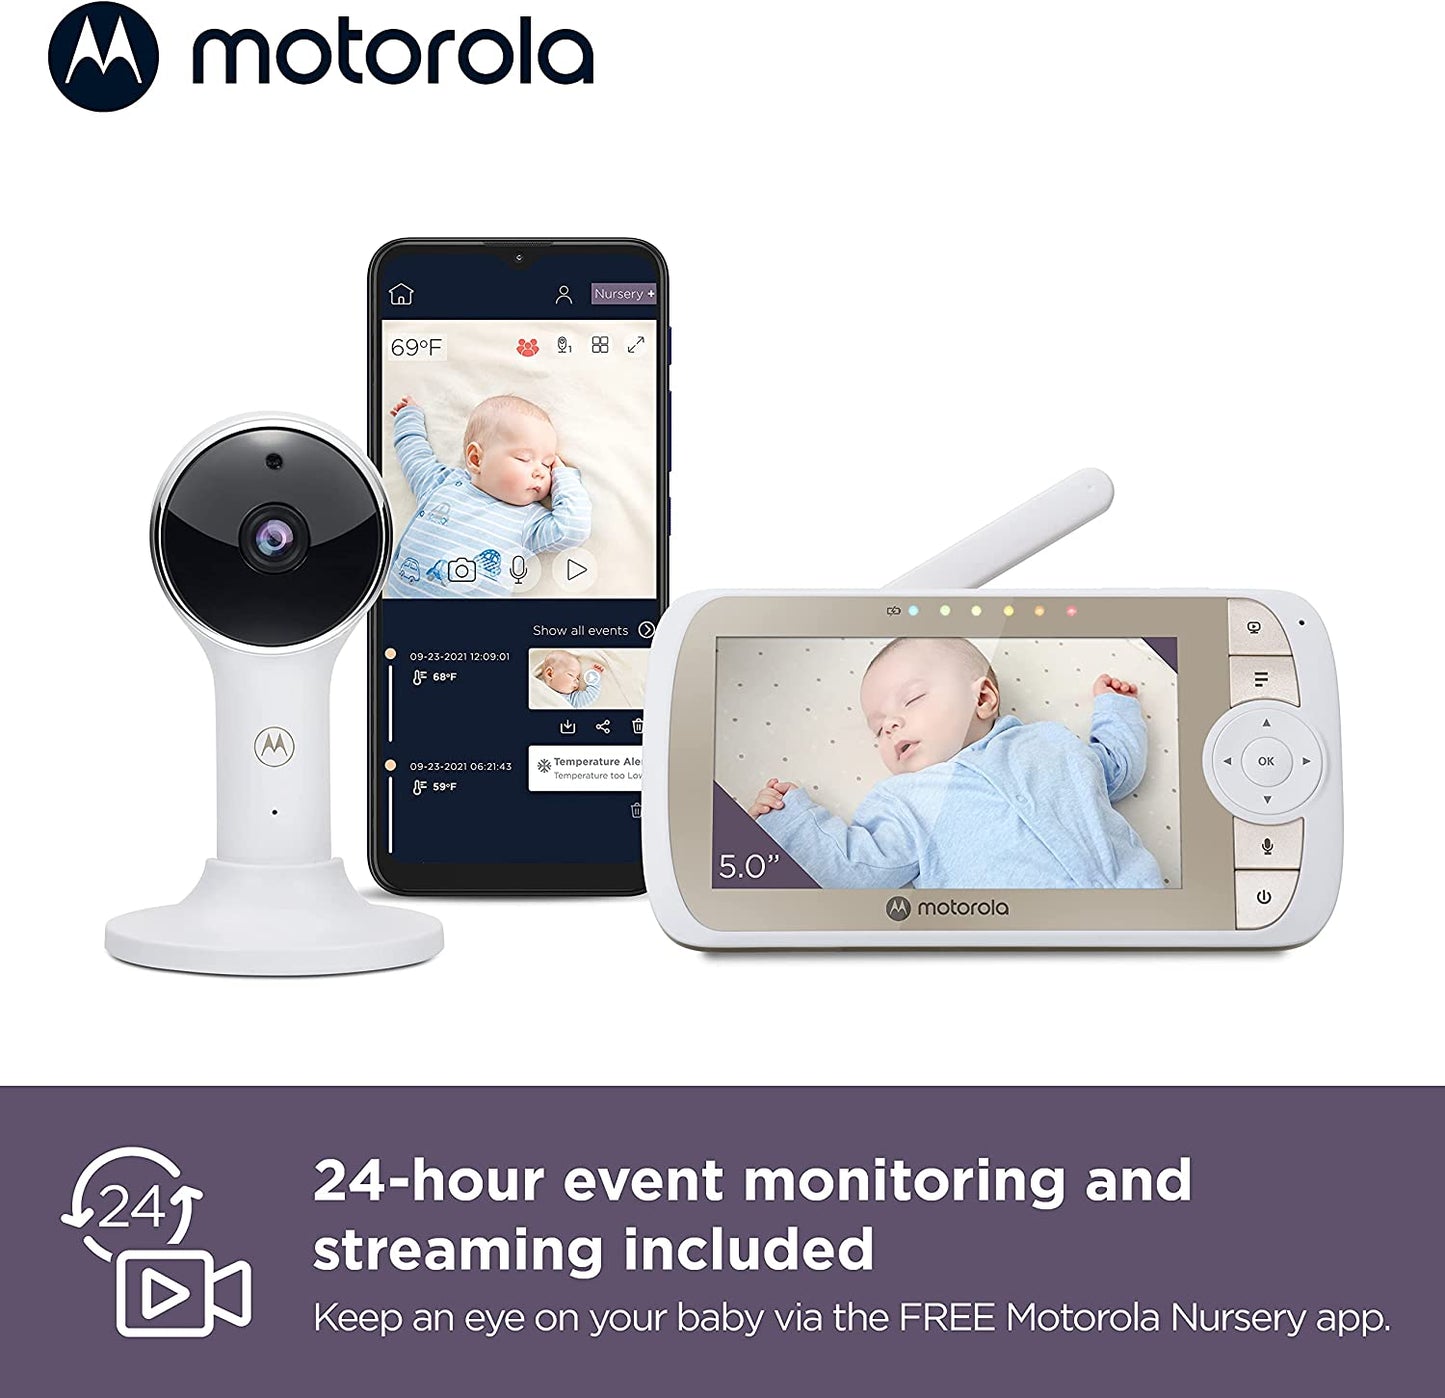 Motorola VM65X Connect Babá Eletrônica Halo Video com suporte para berço